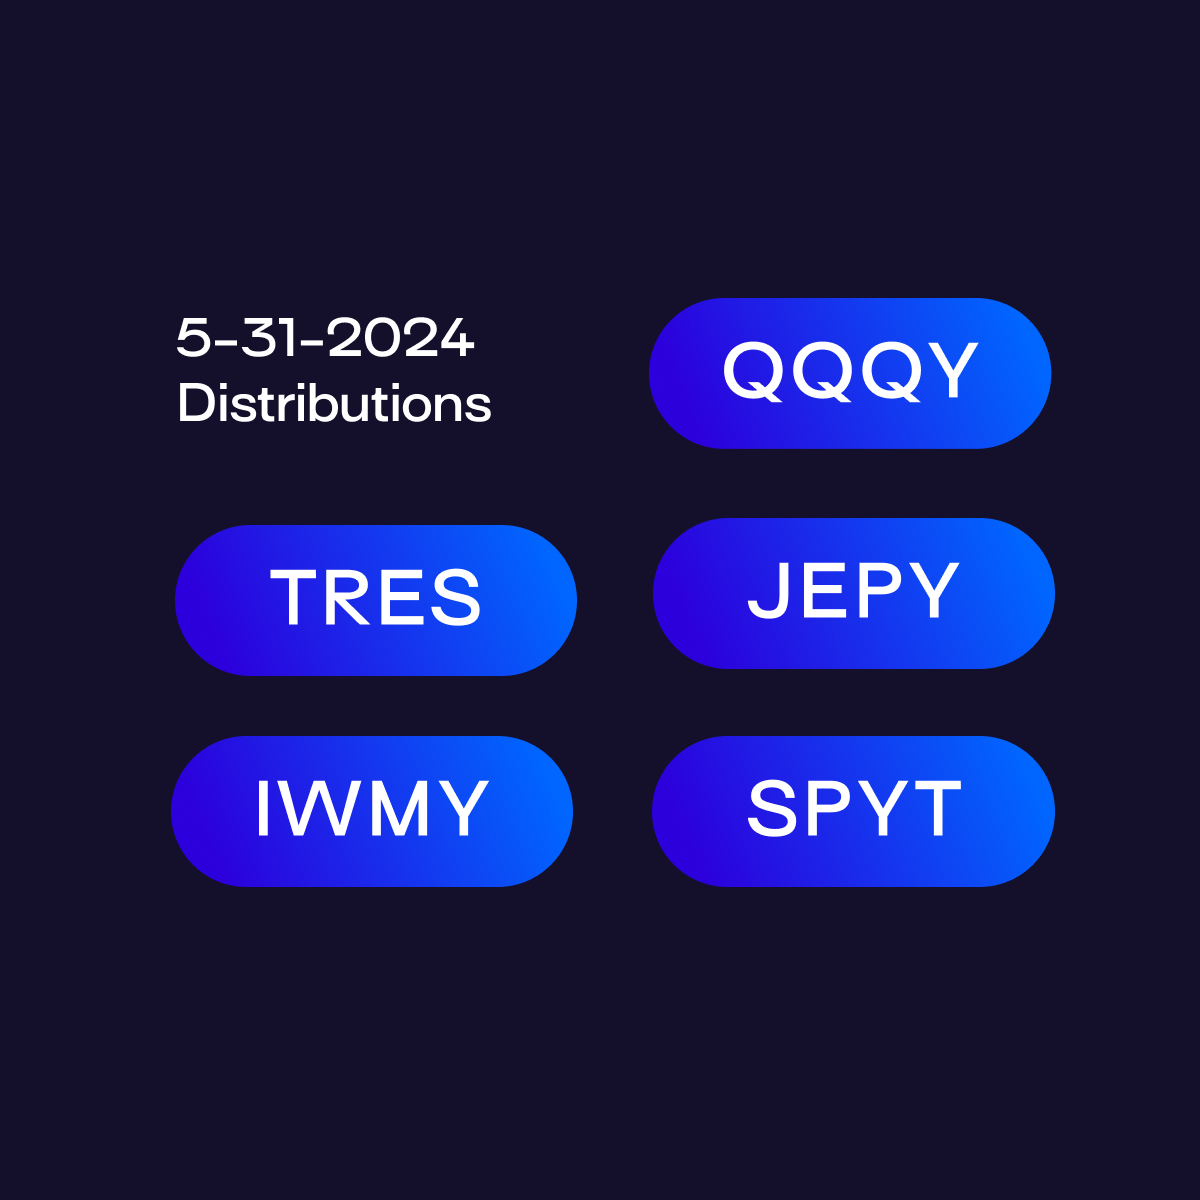 Defiance ETFs Announces Monthly Distributions on $QQQY